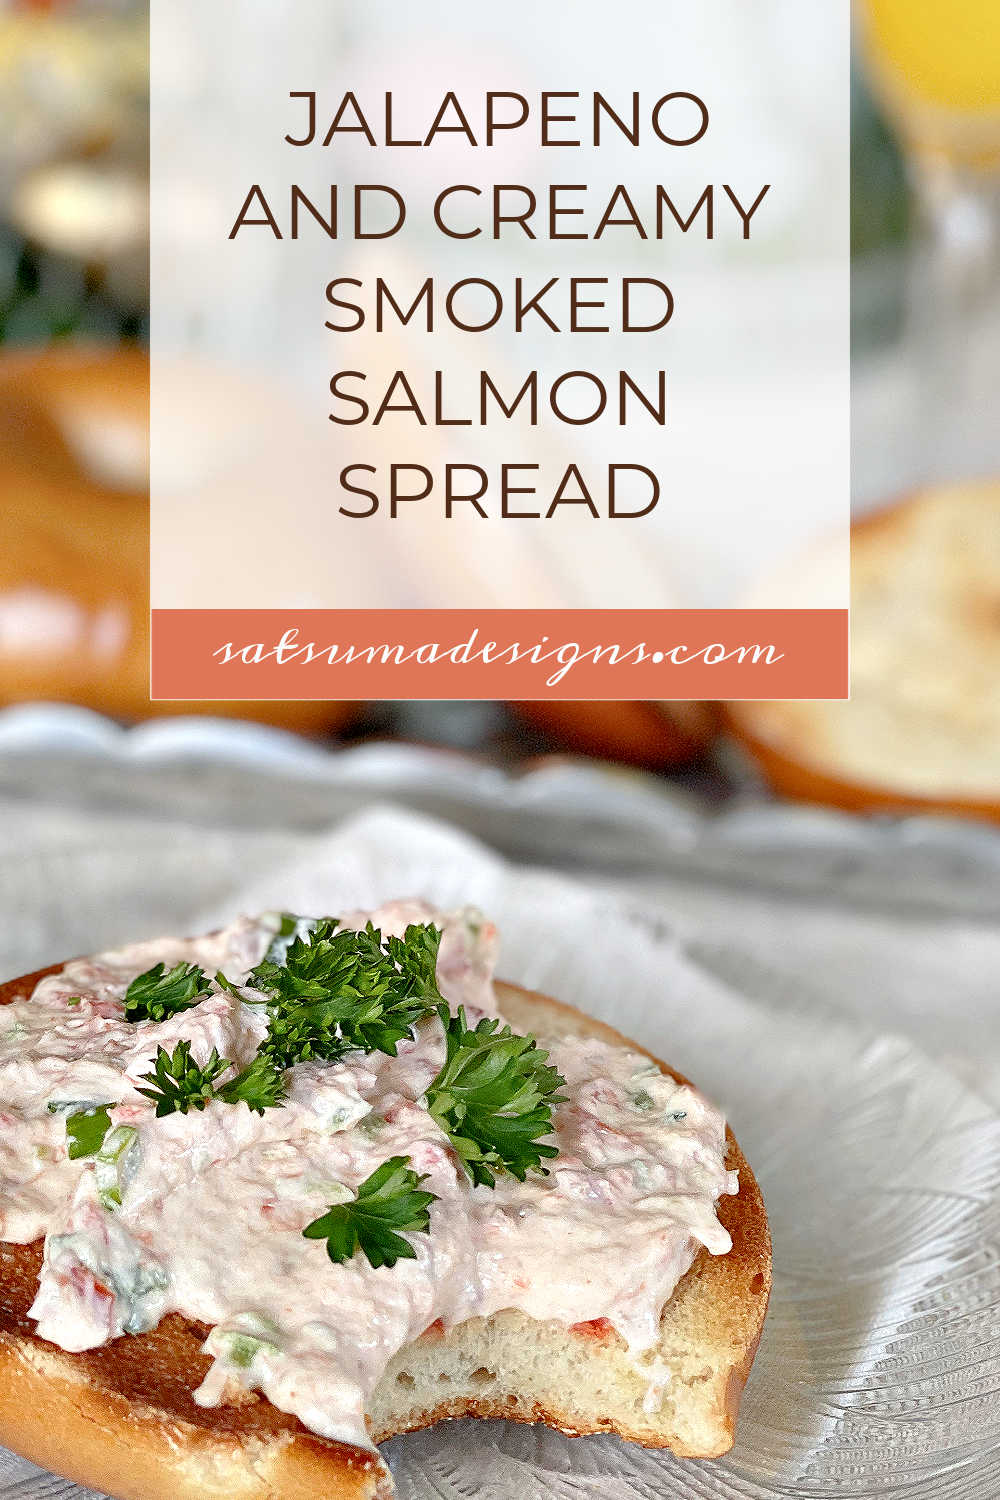 Jalapeño and Creamy Smoked Salmon Spread Recipe